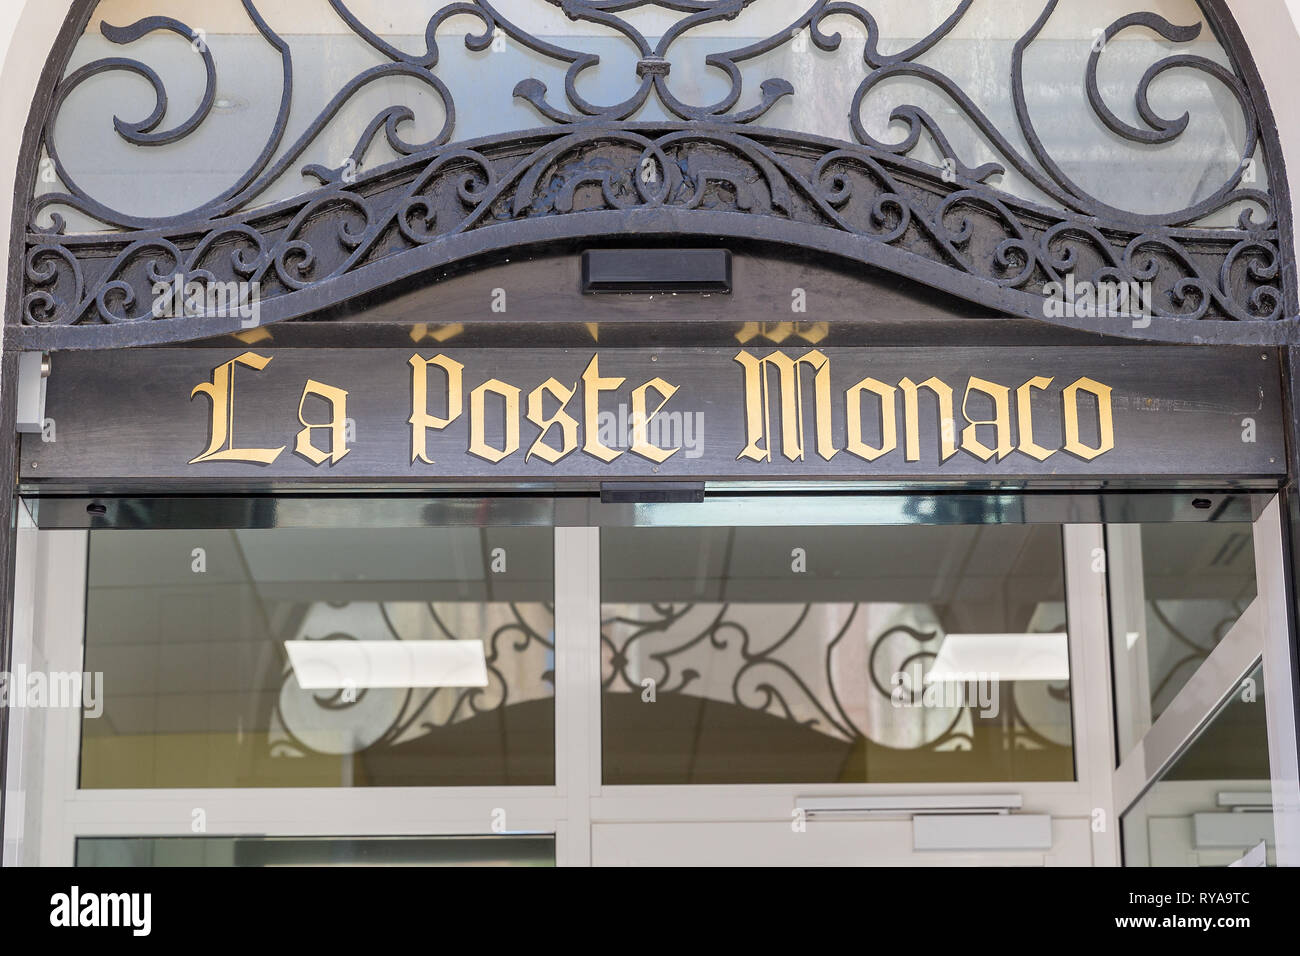 Schriftzug 'La Poste Monaco' ueber dem Eingang zu einer Postfiliale in Monte Carlo, Monaco, 29.08.2018 Bildnachweis: Mario Hommes / HH-Photography Stock Photo